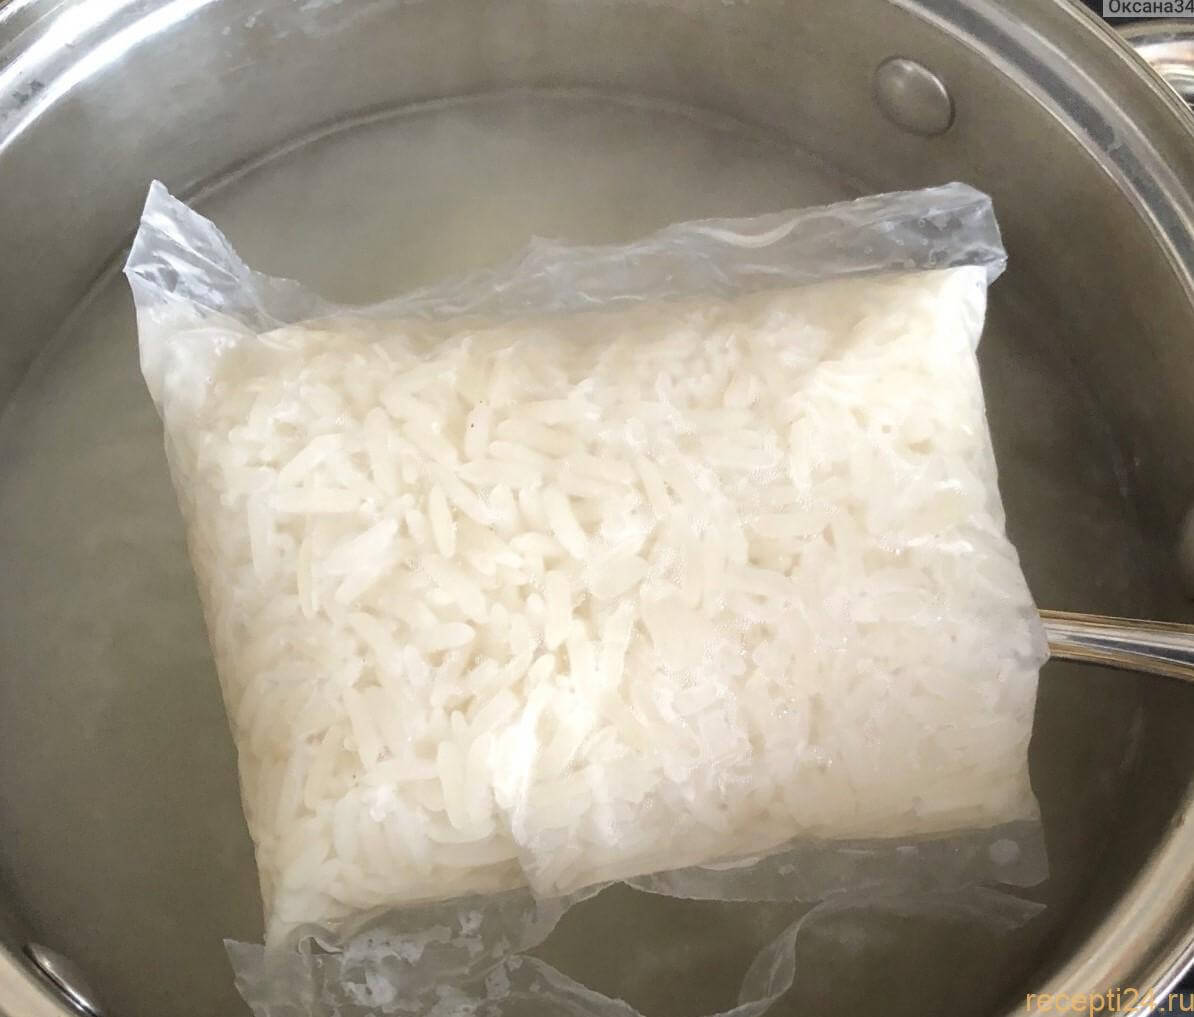 Сколько варить рисовую кашу в пакетиках?